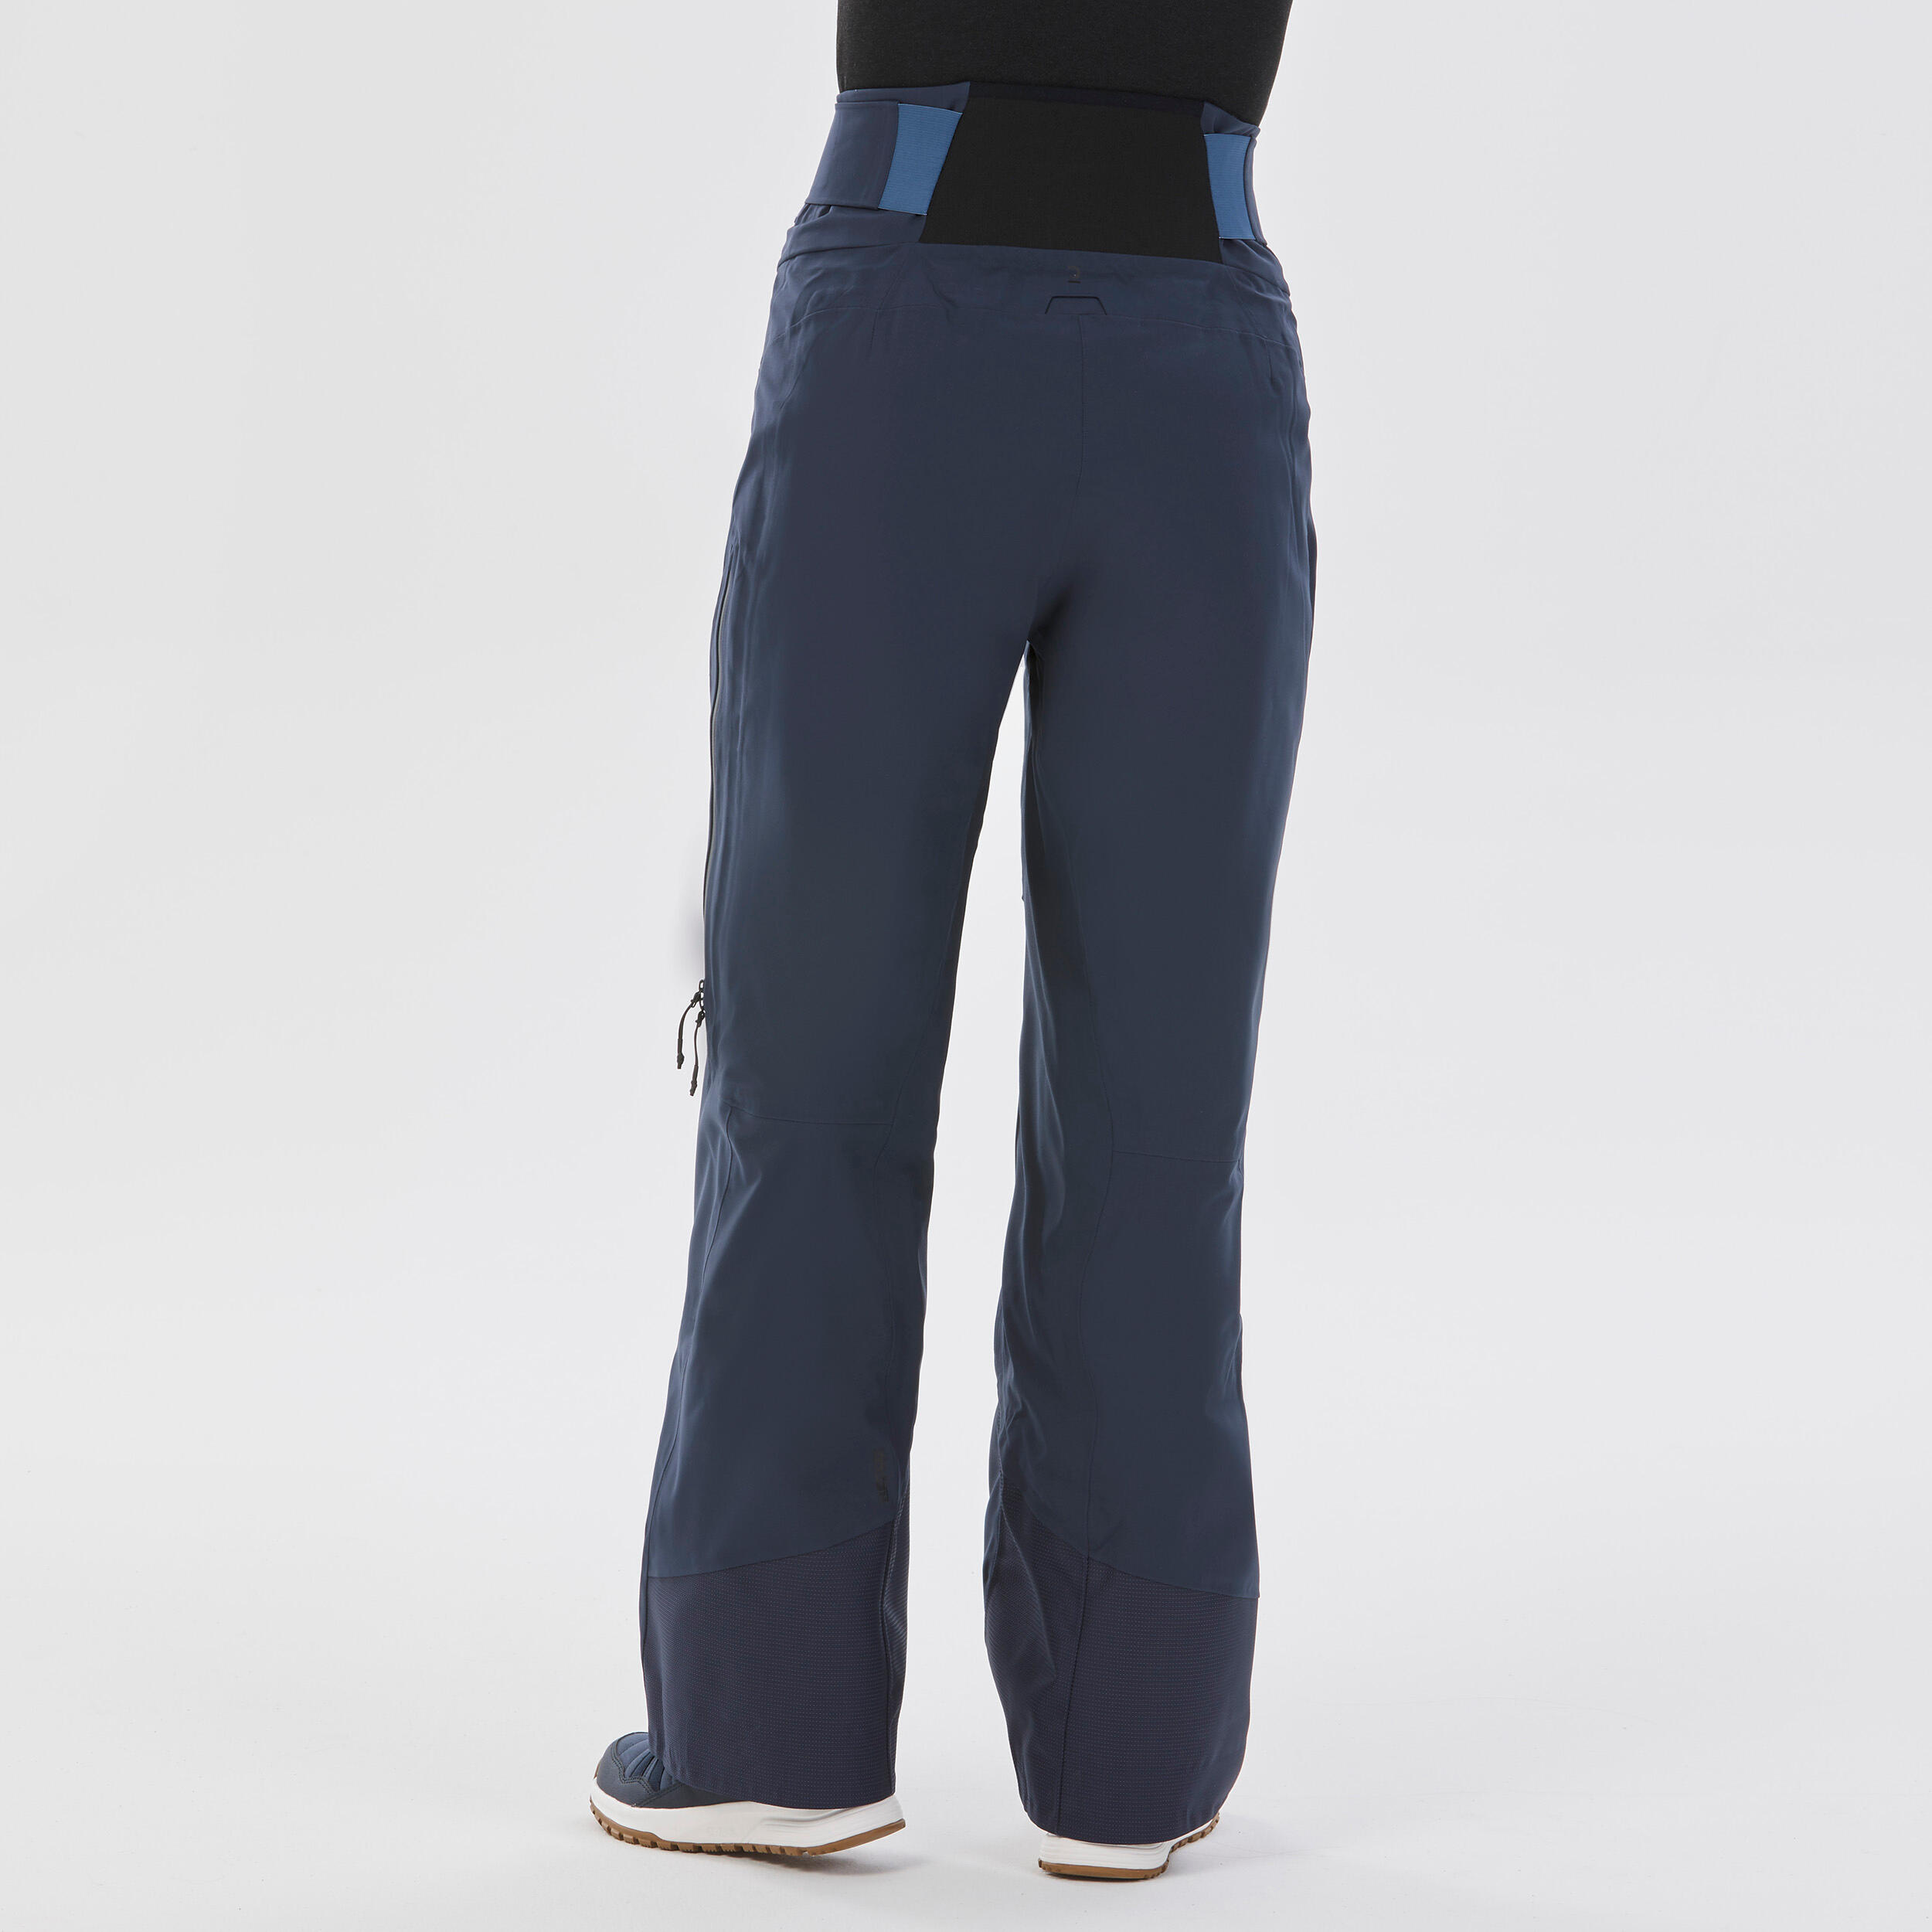 Women’s Ski Trousers FR500 - Navy Blue 5/14